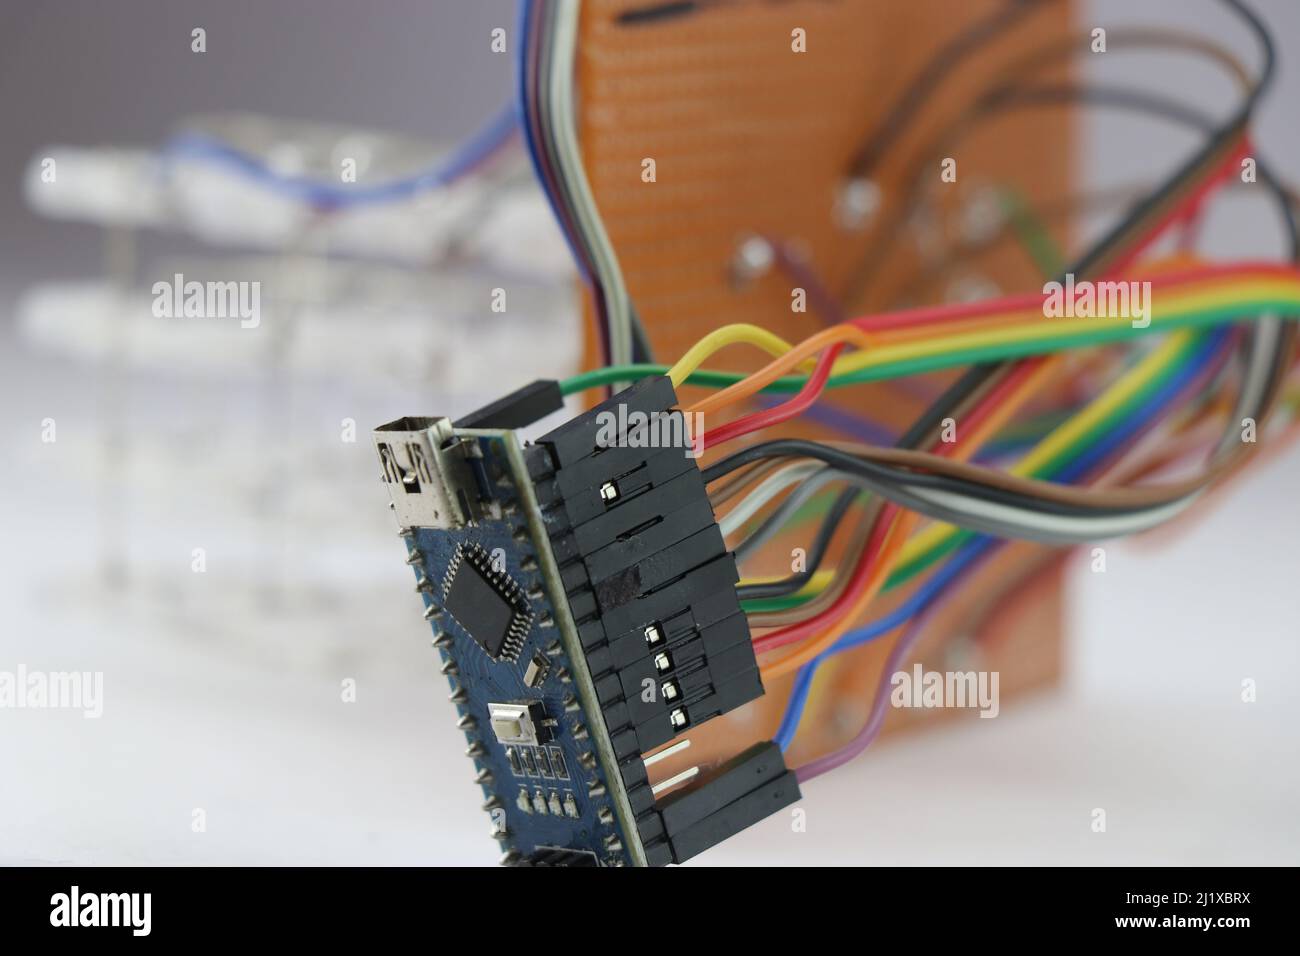 Mikrocontroller Board verbindet sich mit einem elektronischen Projekt, programmierbare Mikrocontroller Board Projekte, die das Konzept der selbstgemachten Erfindung zeigen Stockfoto